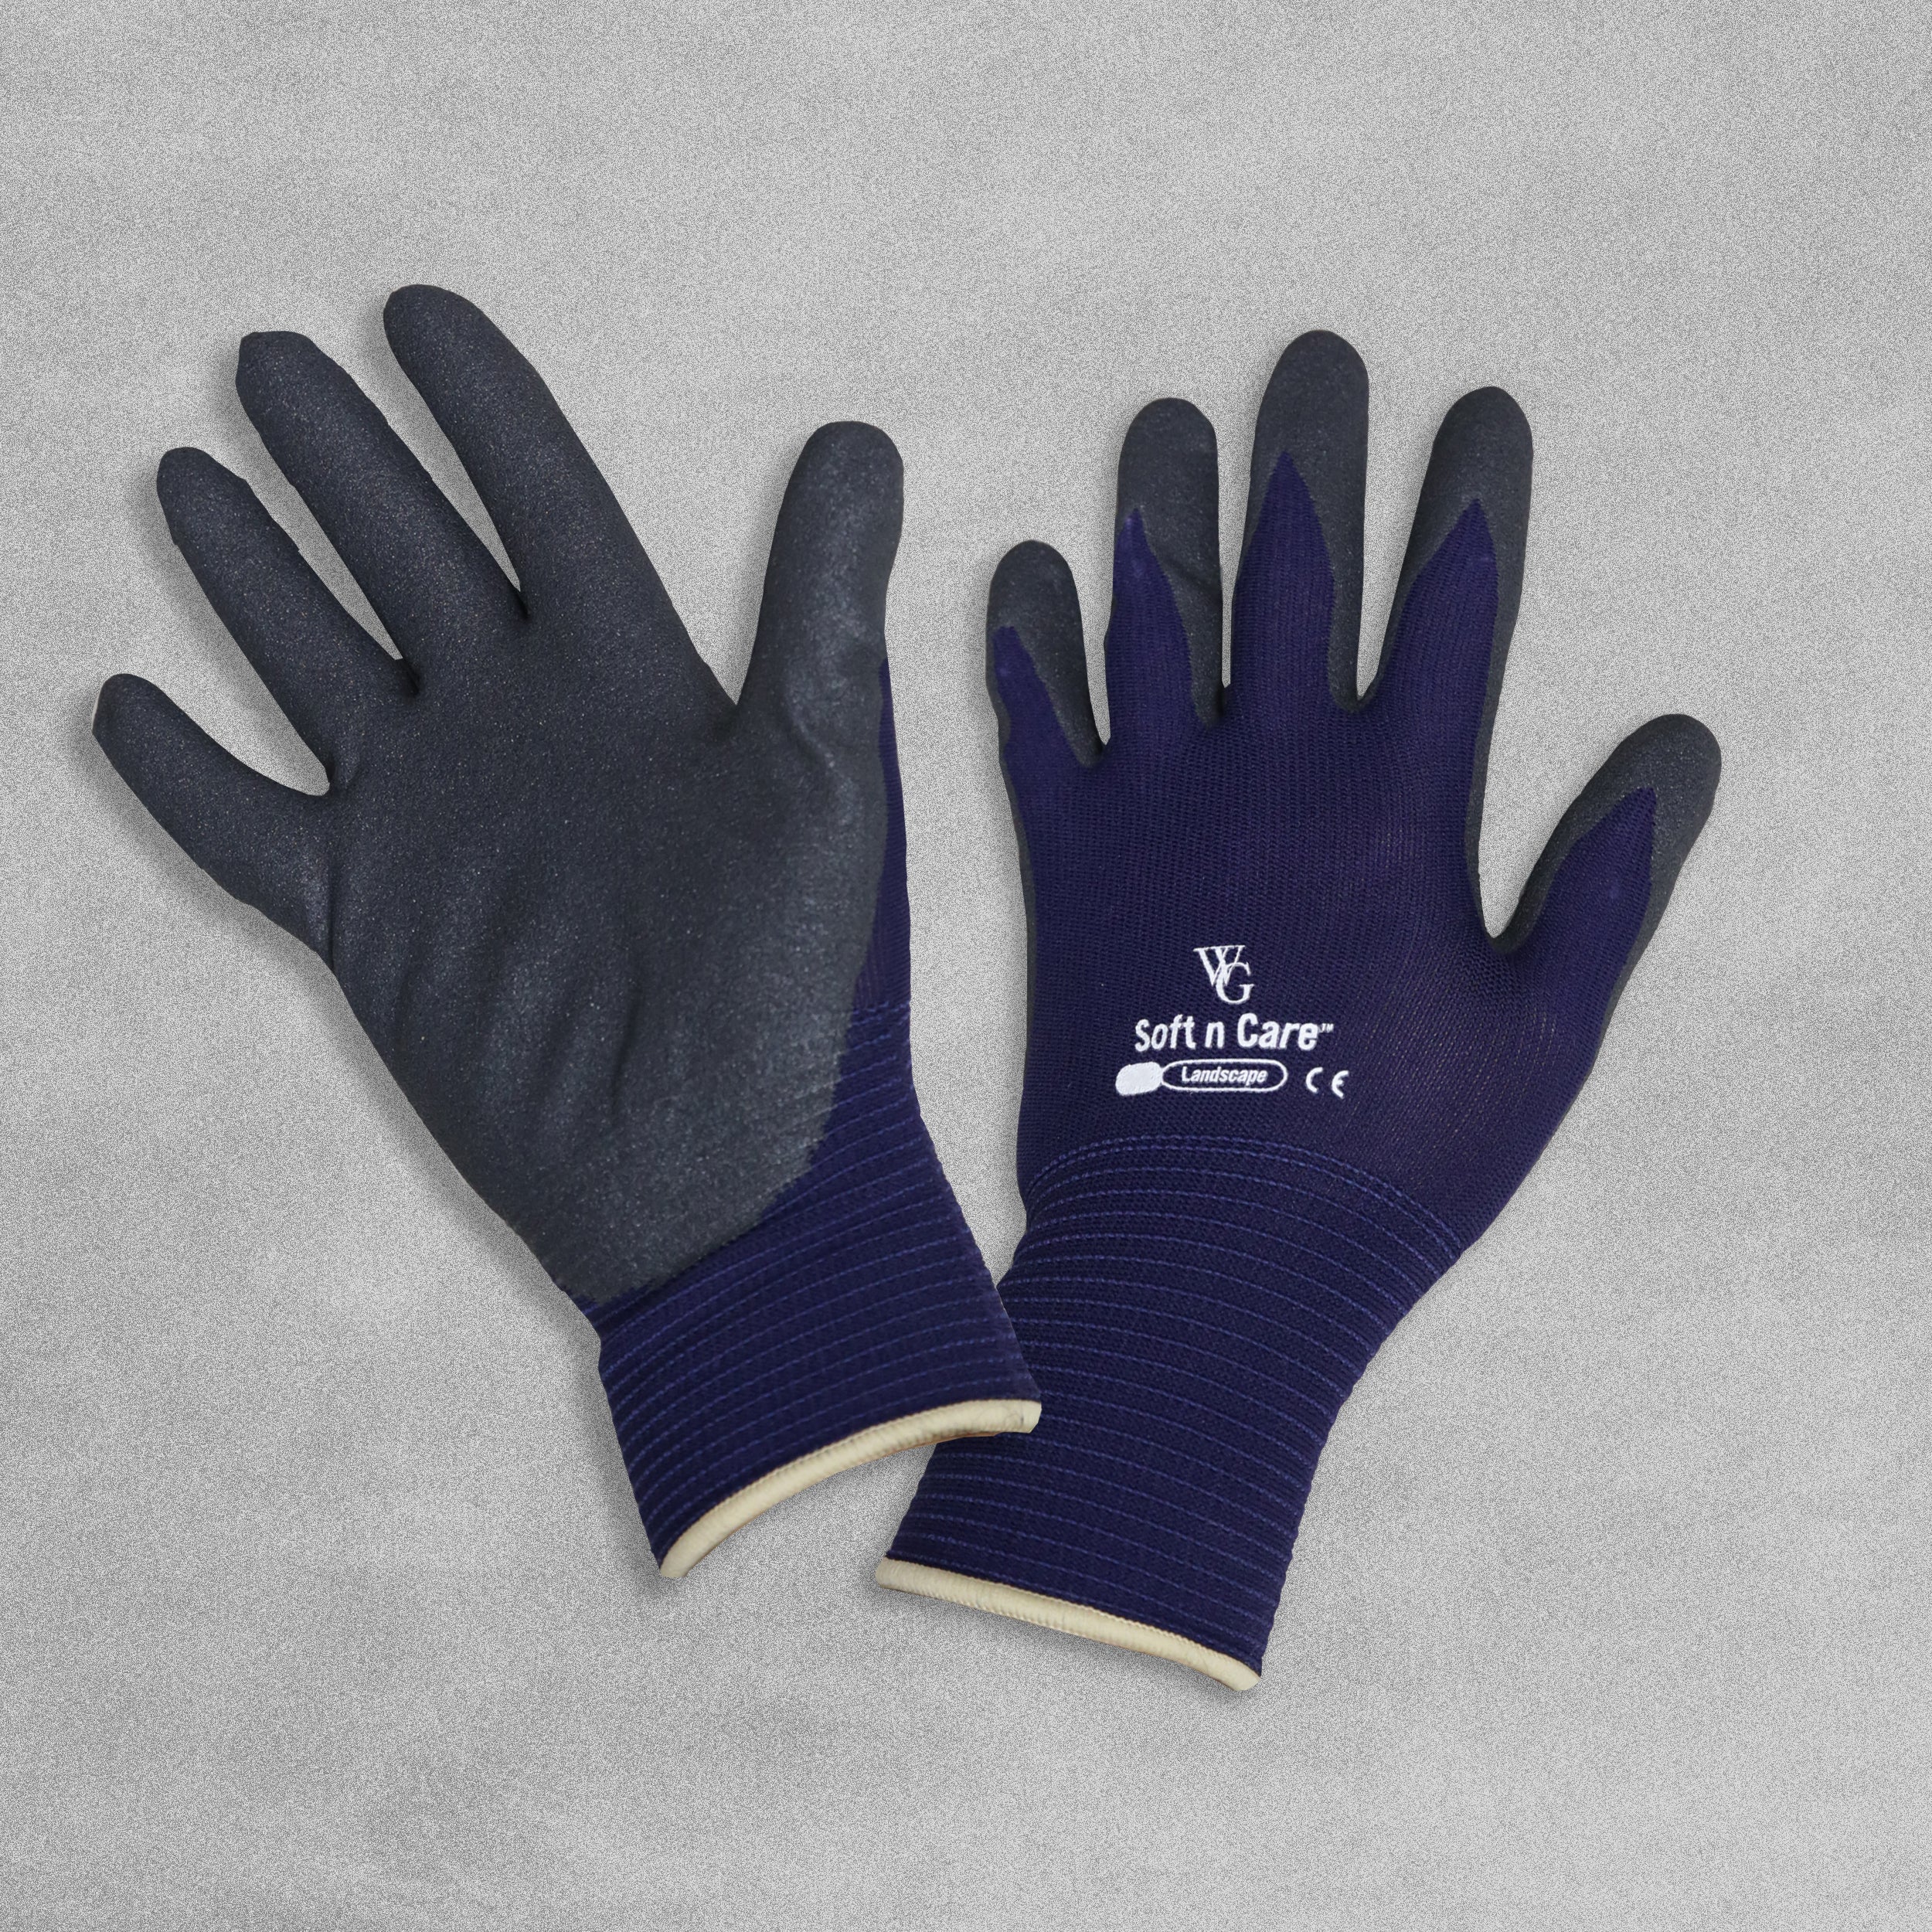 Soft n Care Garden gloves - navy blue